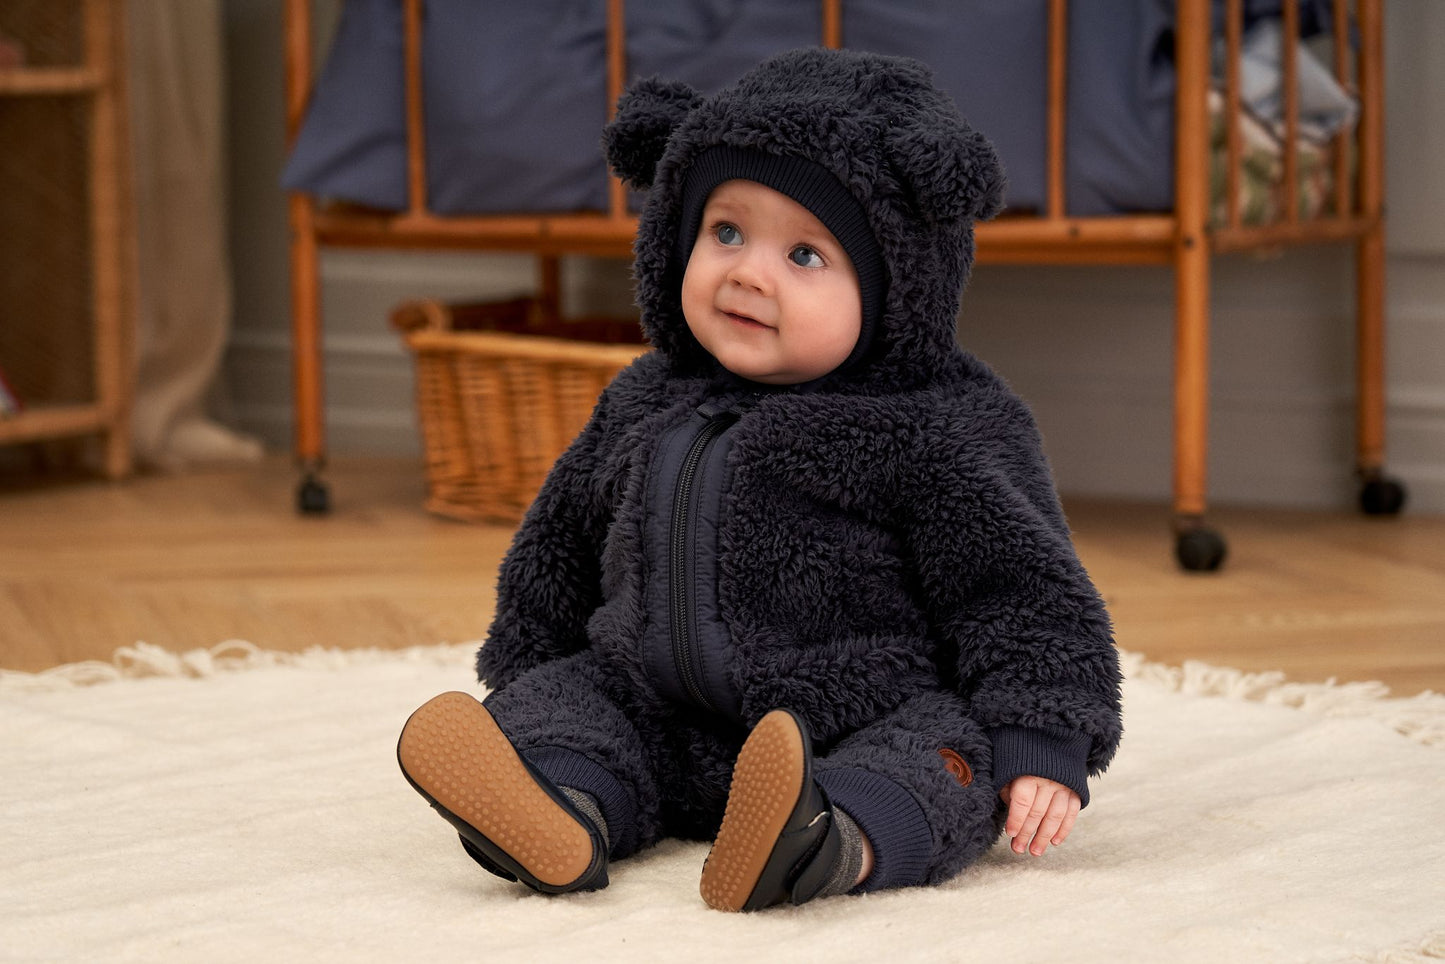 Baby met donkerblauw berenpakje